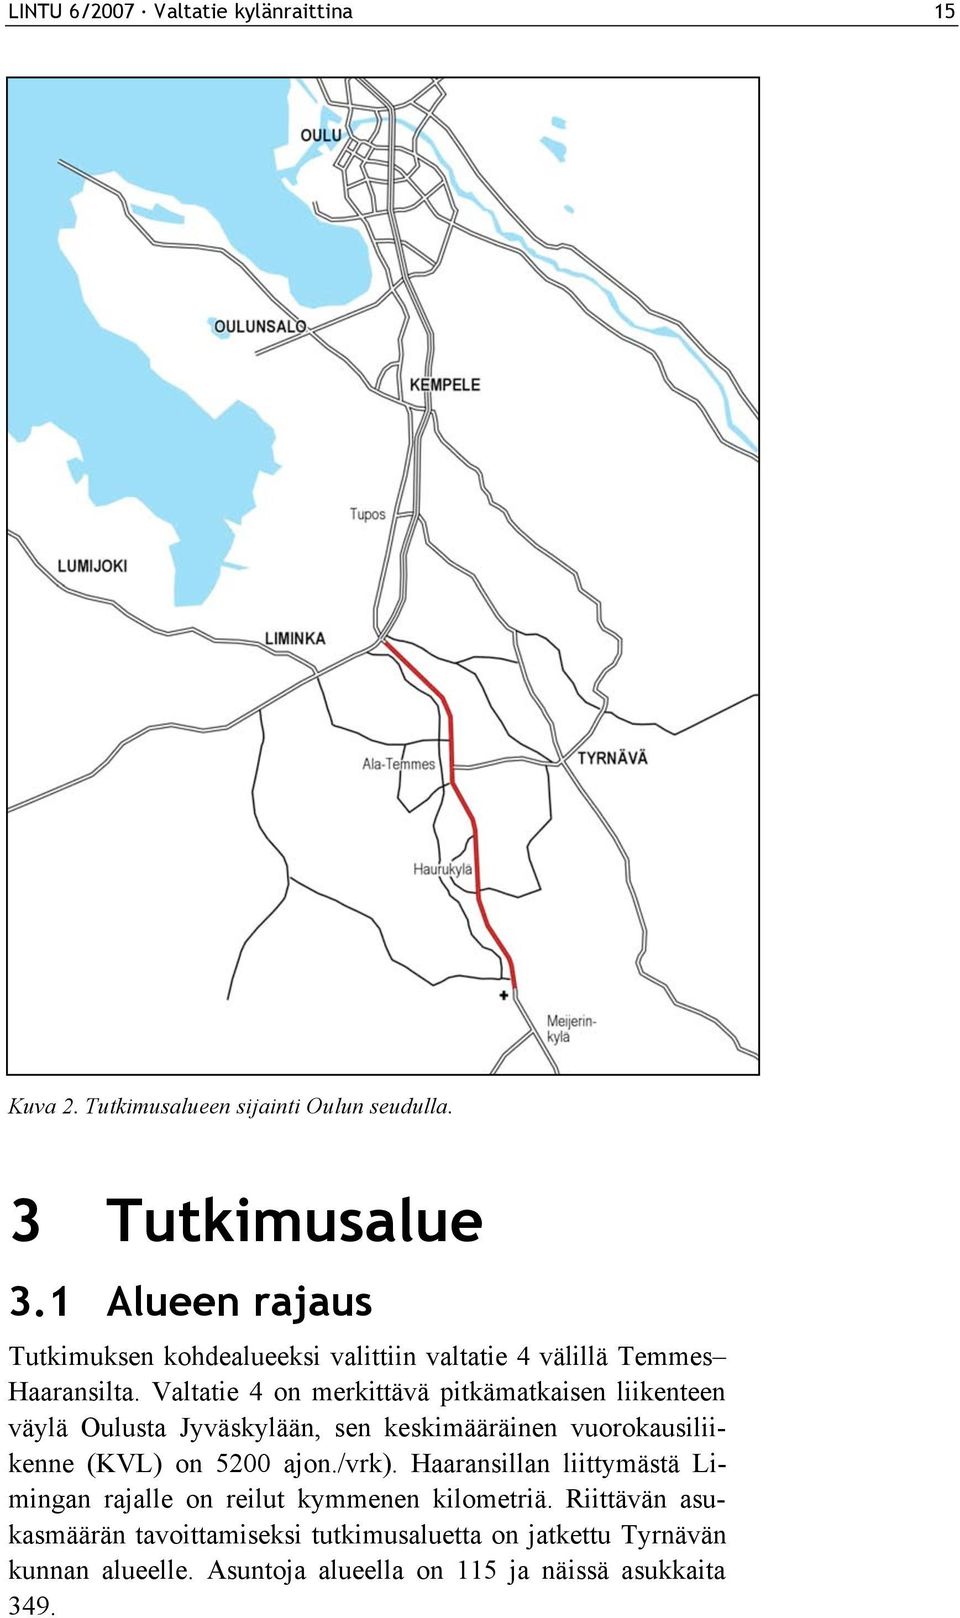 Valtatie 4 on merkittävä pitkämatkaisen liikenteen väylä Oulusta Jyväskylään, sen keskimääräinen vuorokausiliikenne (KVL) on 5200 ajon.